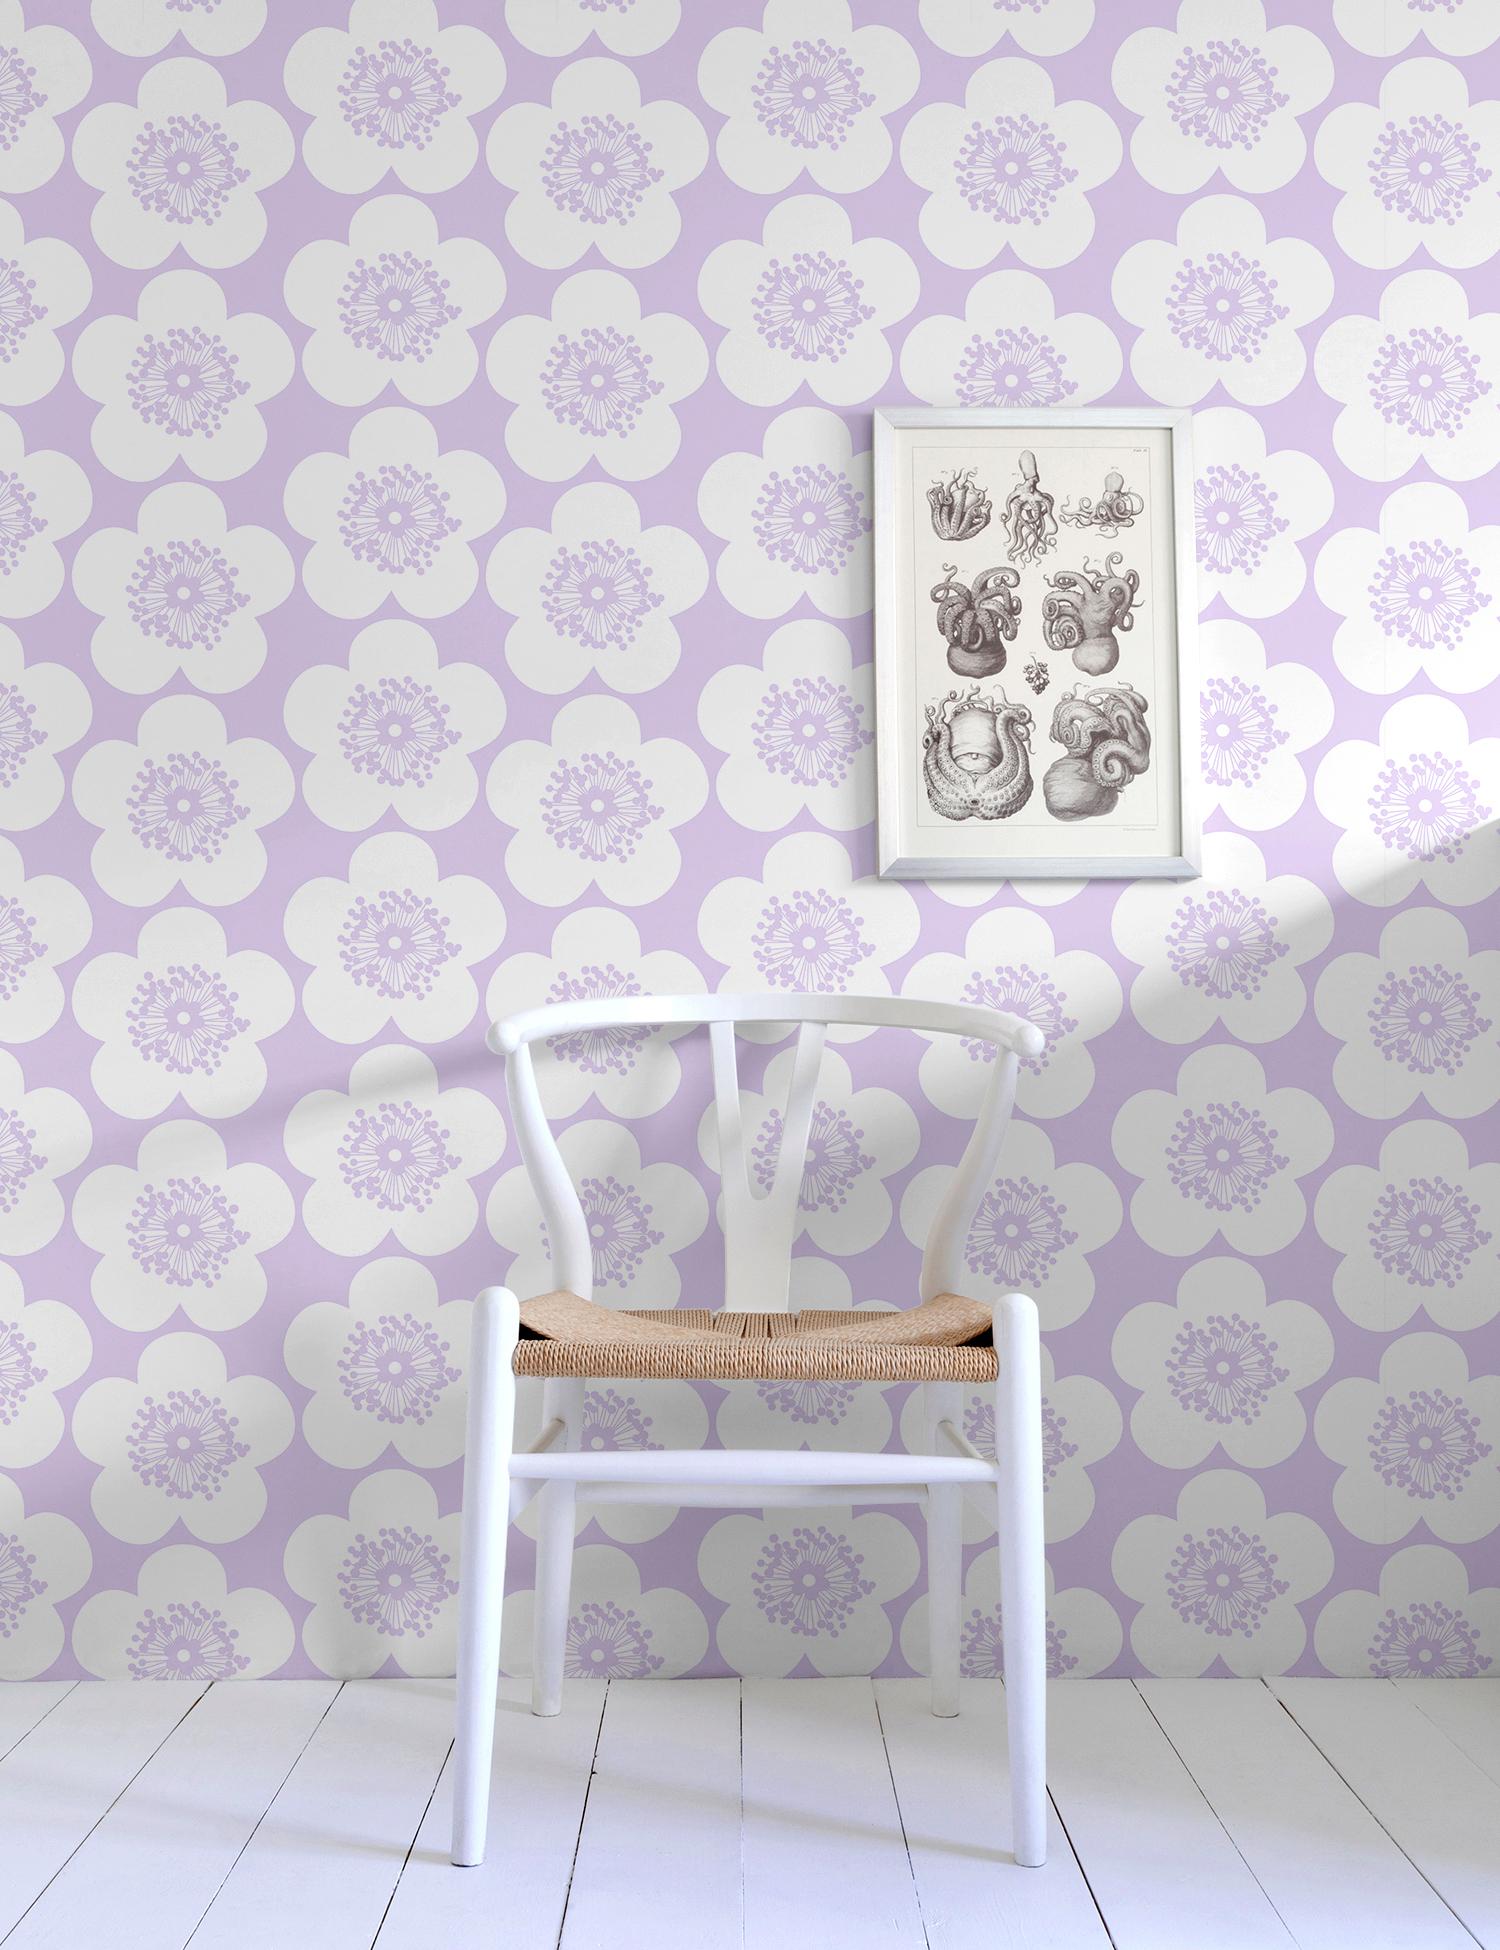 Lavender Wallpaper - 8 For Sale on 1stDibs | lavender wallpaper for walls,  lavender and white wallpaper, lavender background